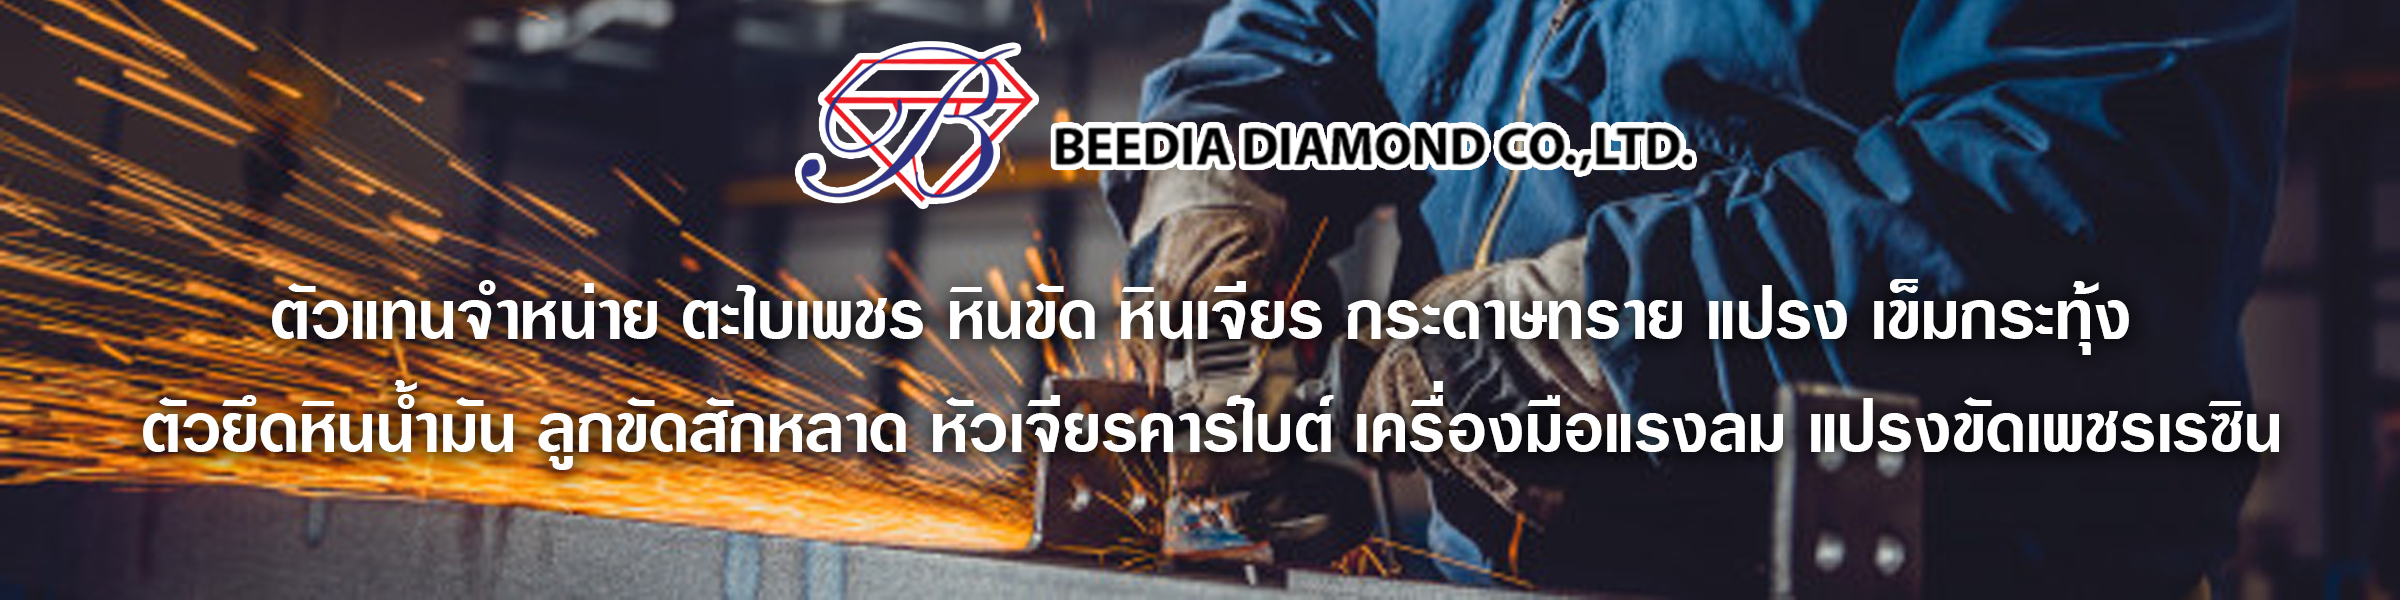 beediadiamond